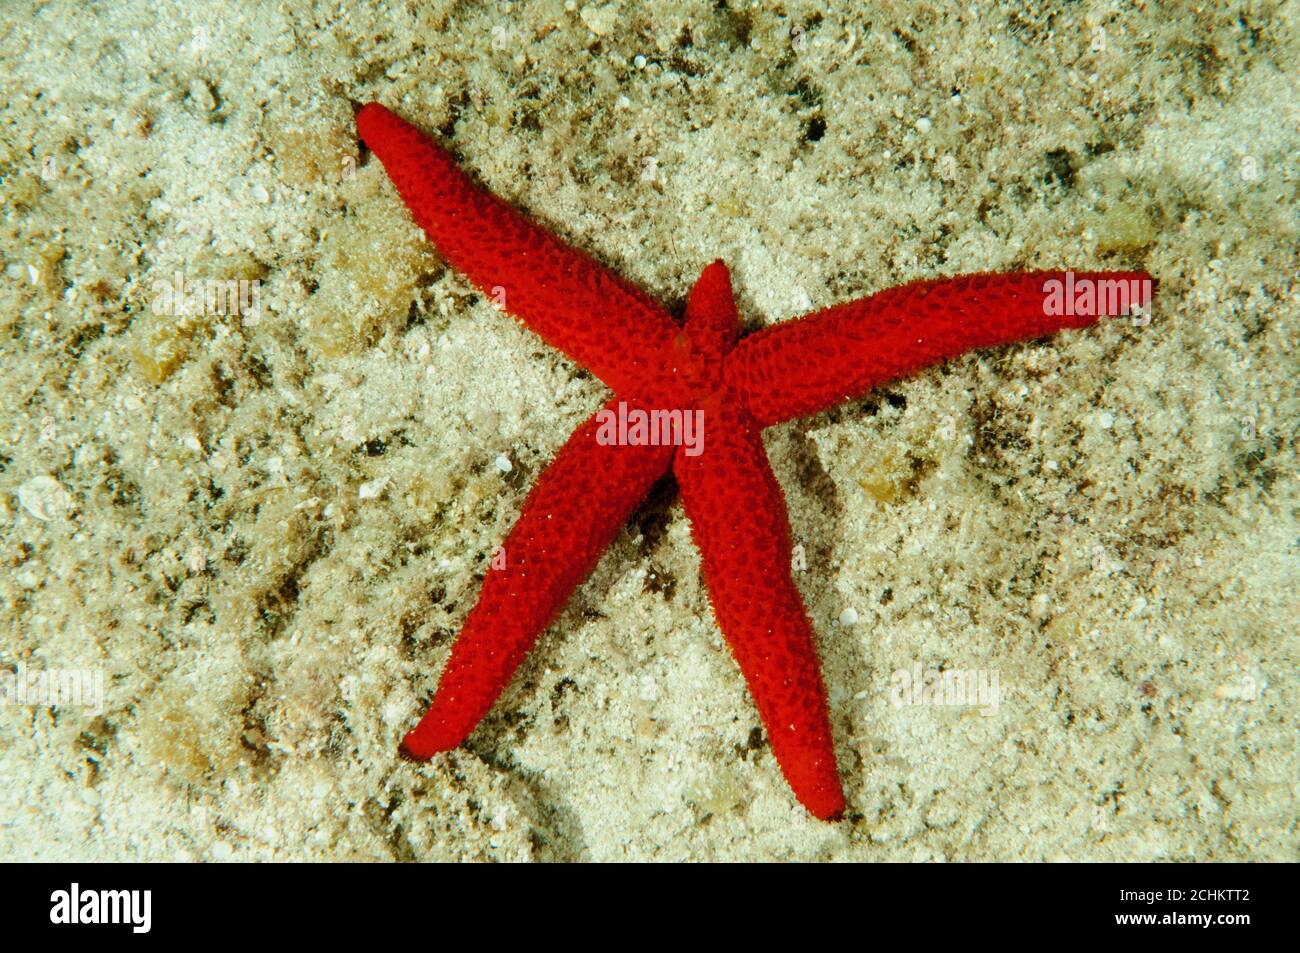 Mediterraner roter Startfisch, Echinaster sepositus, regenerierender fehlender Arm, Kas Türkei Stockfoto